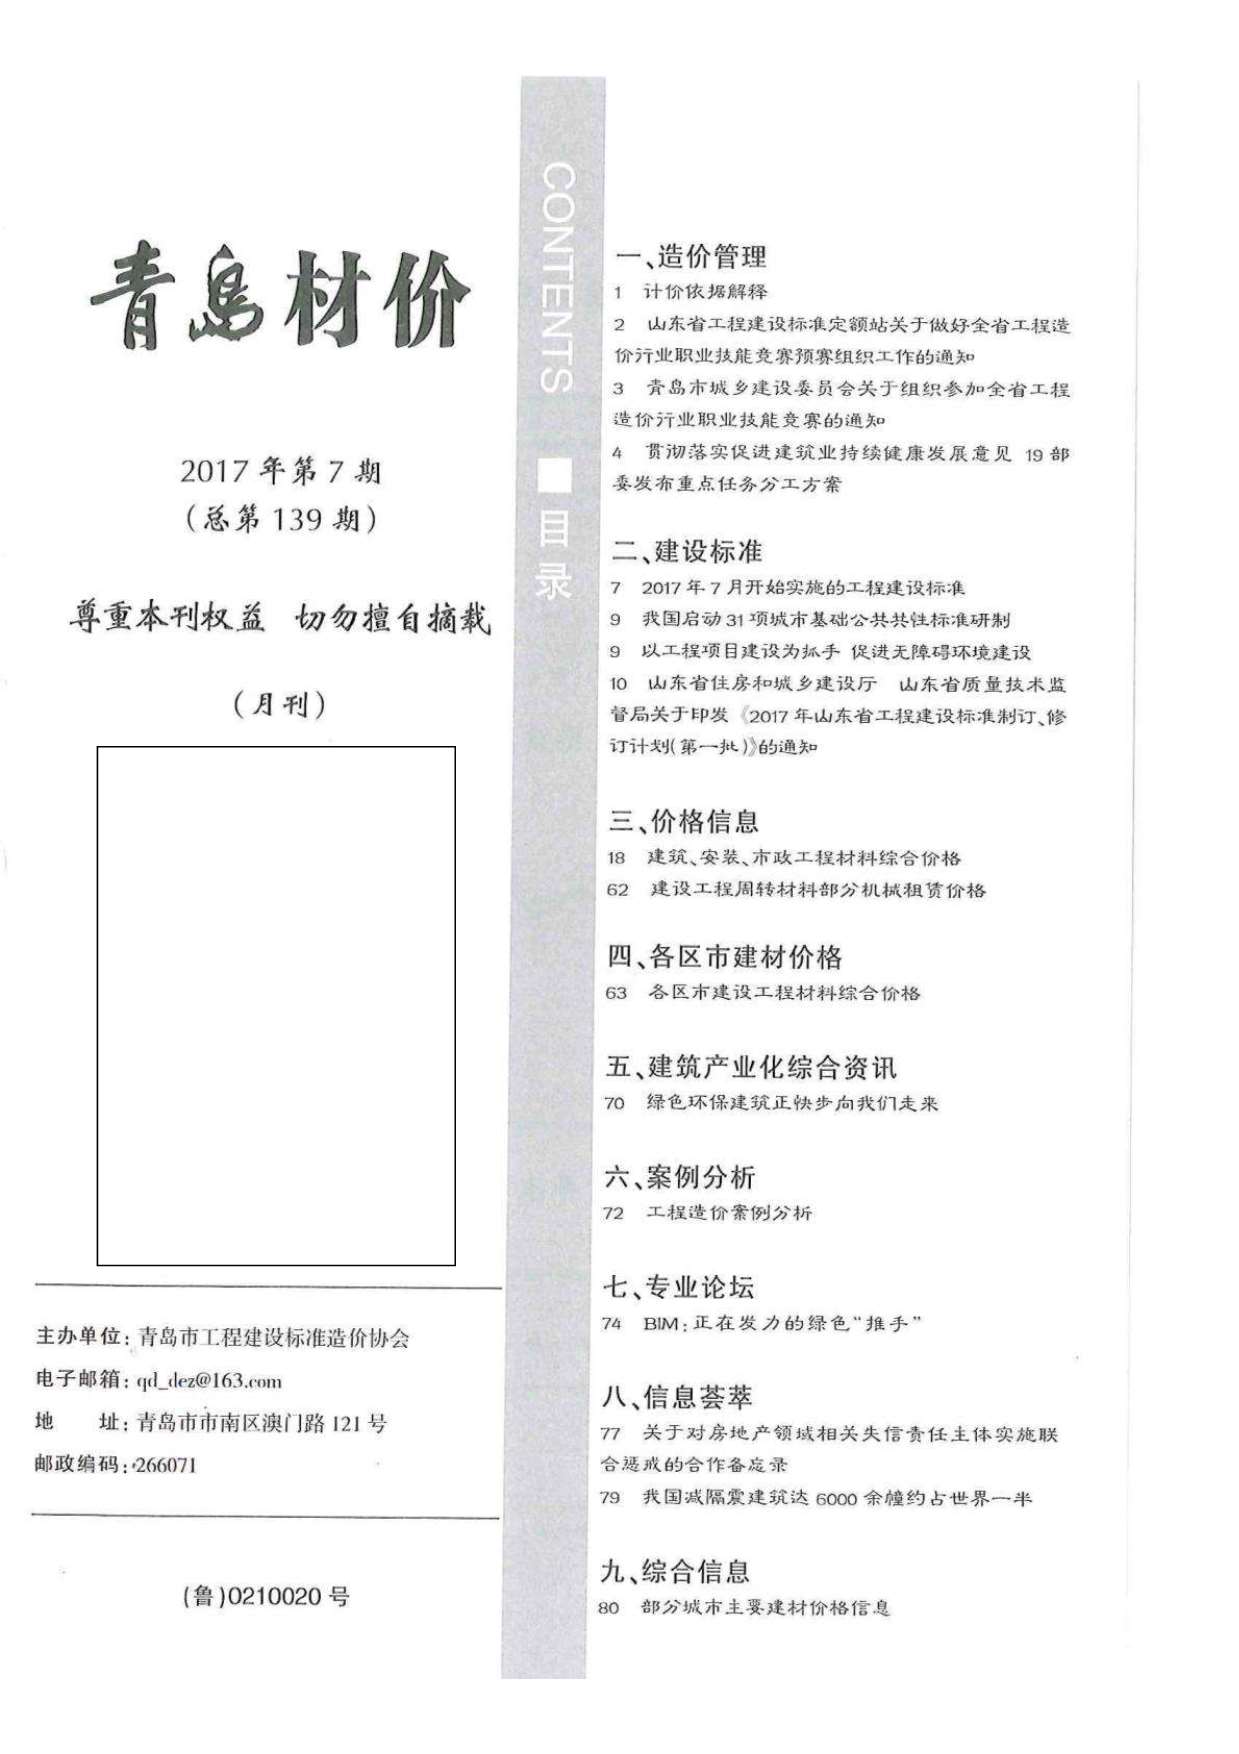 青岛市2017年7月工程信息价_青岛市信息价期刊PDF扫描件电子版